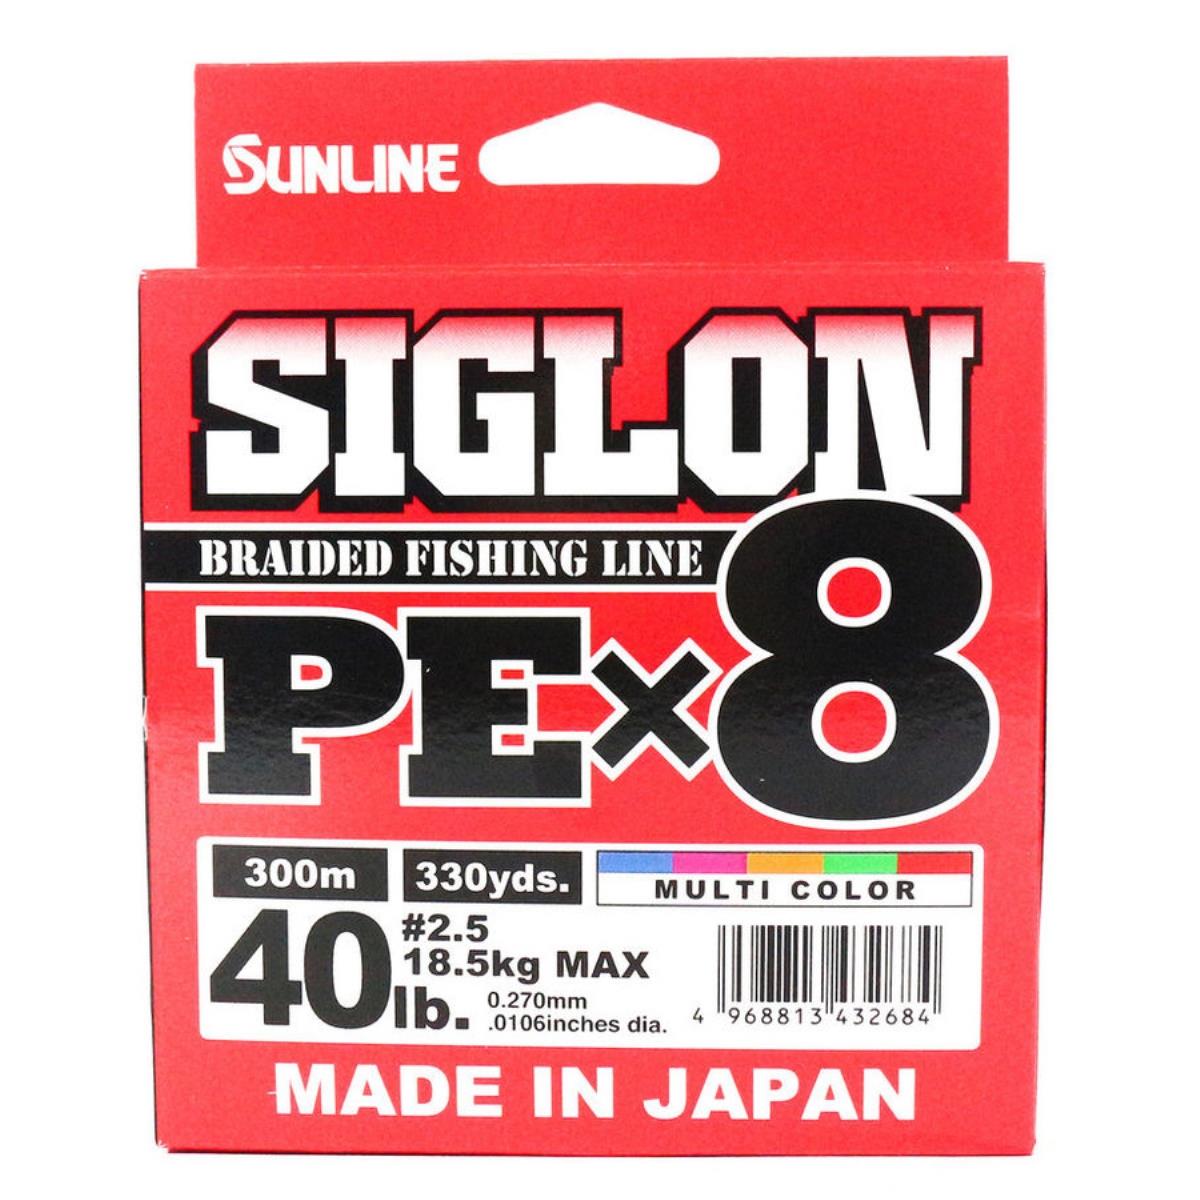 Шнур SIGLON PE×8 150M (Multikolor 5C) Sunline краскораспылитель wagner control pro 150m hea 2394312